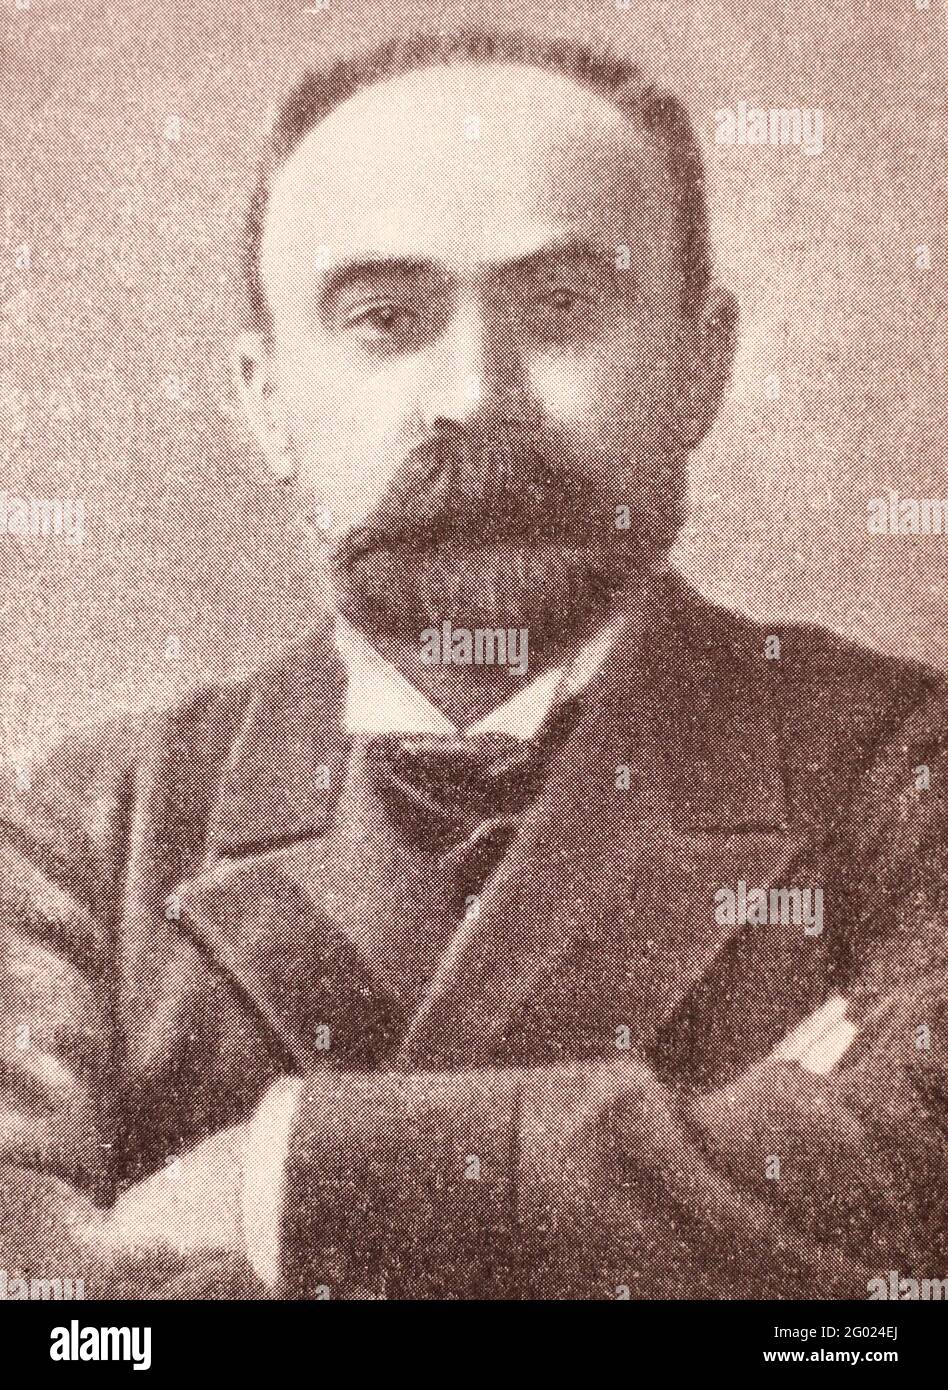 Georgi Walentinowitsch Plechanow war ein russischer Revolutionär, Philosoph und marxistischer Theoretiker. Er war Gründer der sozialdemokratischen Bewegung in Russland und einer der ersten Russen, die sich als "Marxist" identifizierte. Angesichts politischer Verfolgung emigrierte Plechanow 1880 in die Schweiz, wo er seine politischen Aktivitäten fortsetzte, um das zaristische Regime in Russland zu stürzen. Plechanow ist bekannt als der "Vater des russischen Marxismus". Stockfoto